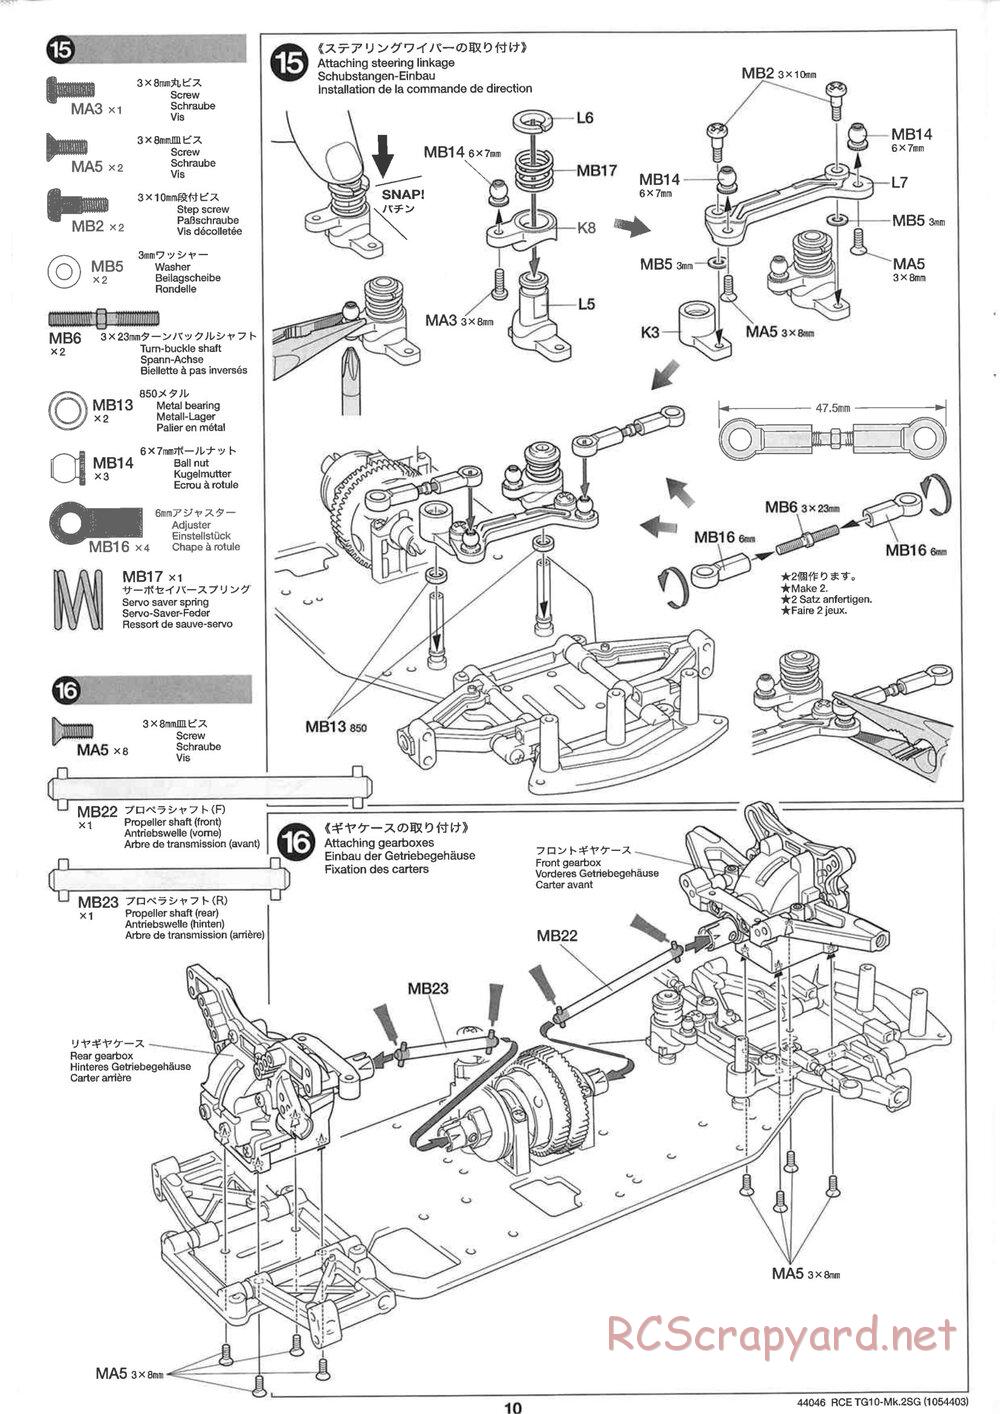 Tamiya - TG10 Mk.2SG Chassis - Manual - Page 10